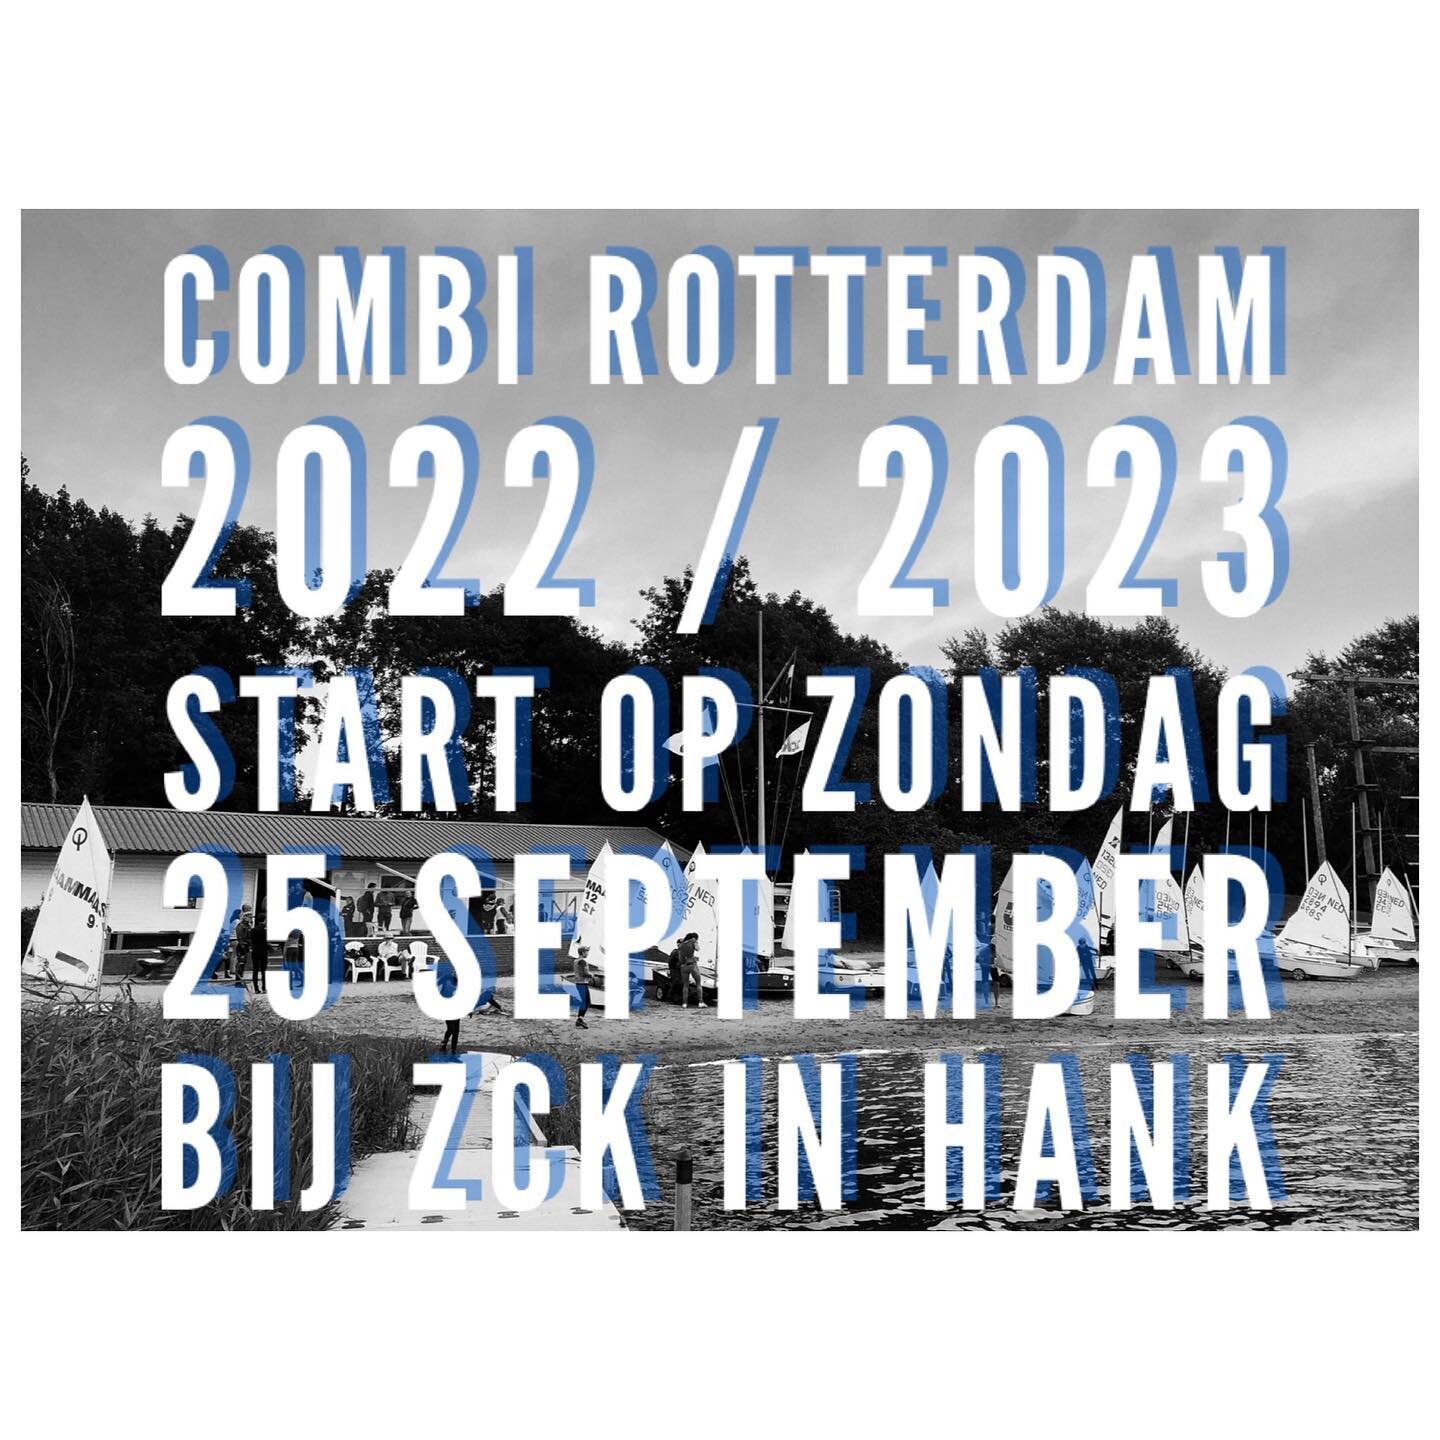 Schrijf je snel in voor de Combi Rotterdam, seizoen 2022/2023 editie ZCK in Hank! Zondag 25 september is het al zo ver. Na @united4sailing in Workum en de @combinl finale in Hoorn komend weekend is iedereen maximaal prepped voor het nieuwe seizoen @c